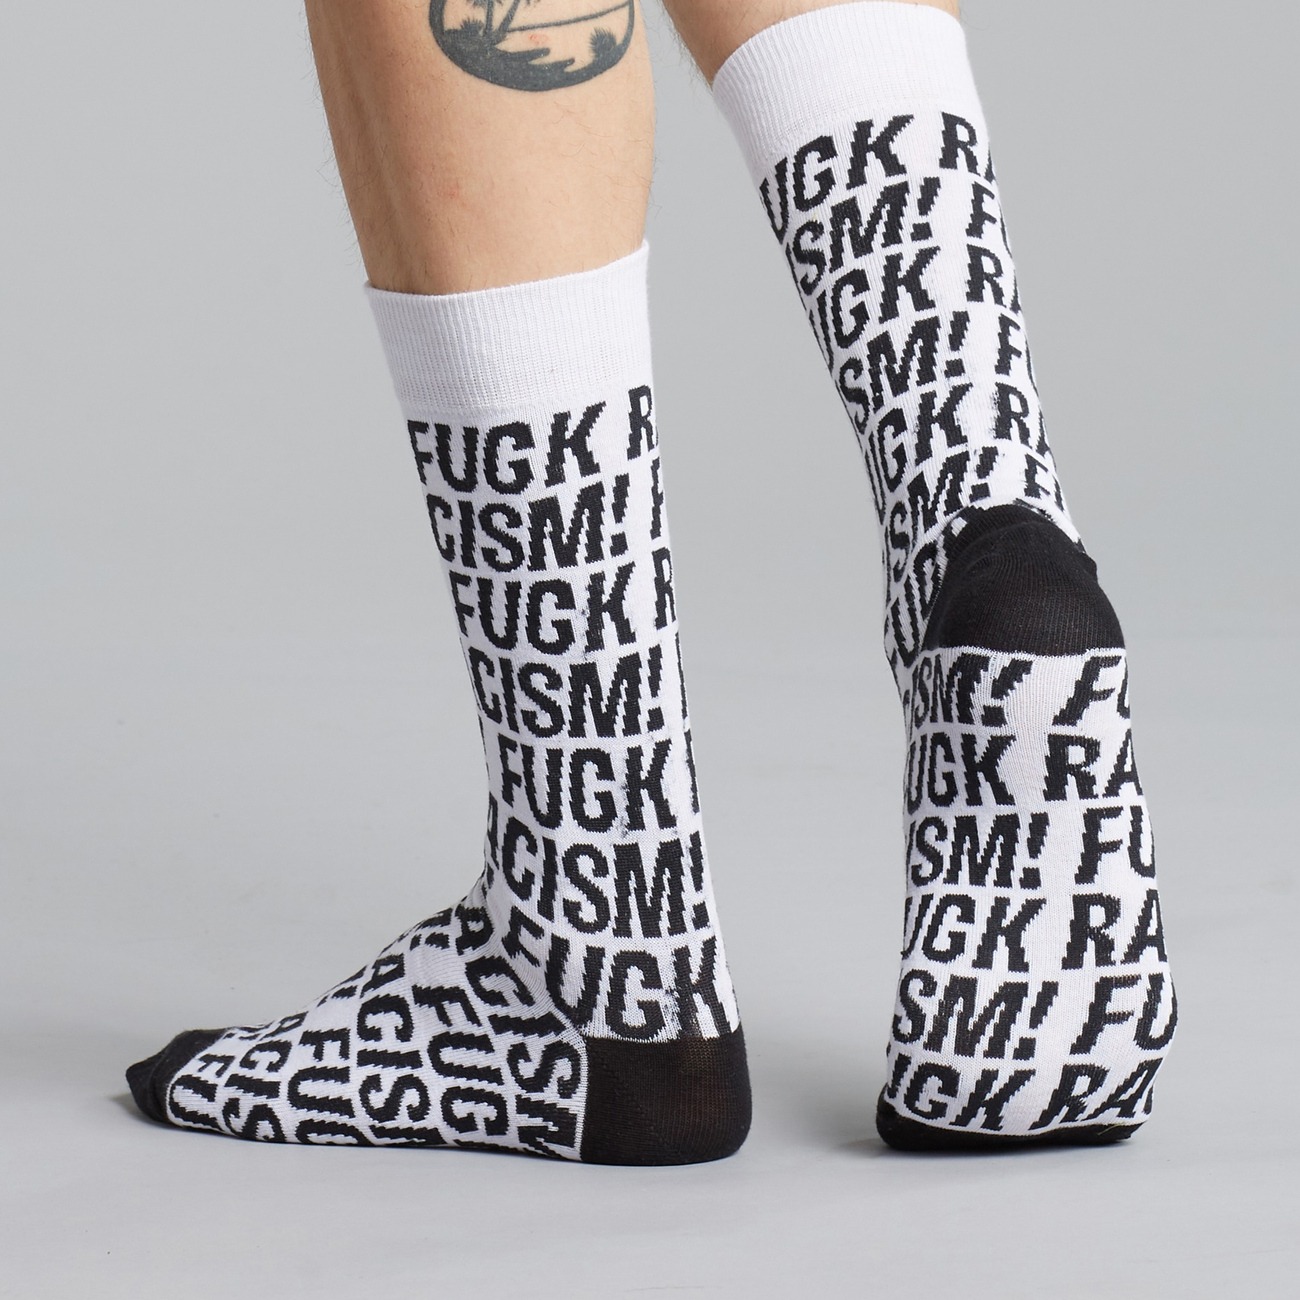 Socken mit Fuck Racism Slogan von Dedicated. Strümpfe aus Bio-Baumwolle in Weiß mit schwarzem Muster.